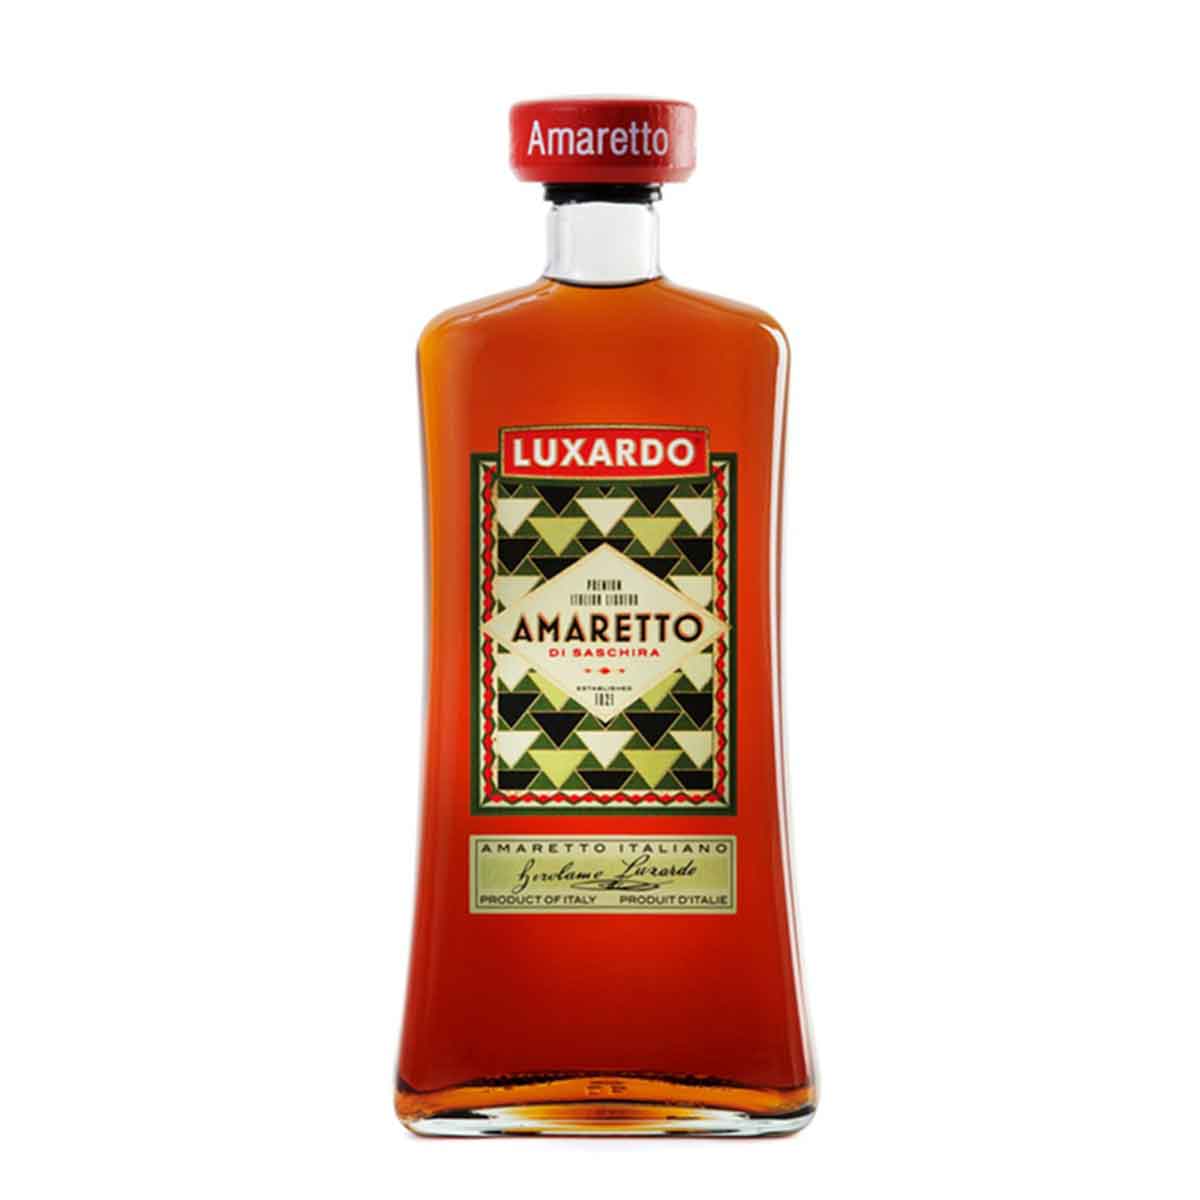 TAG Liquor Stores BC-LUXARDO AMARETTO DI SASCHIRA 750ML